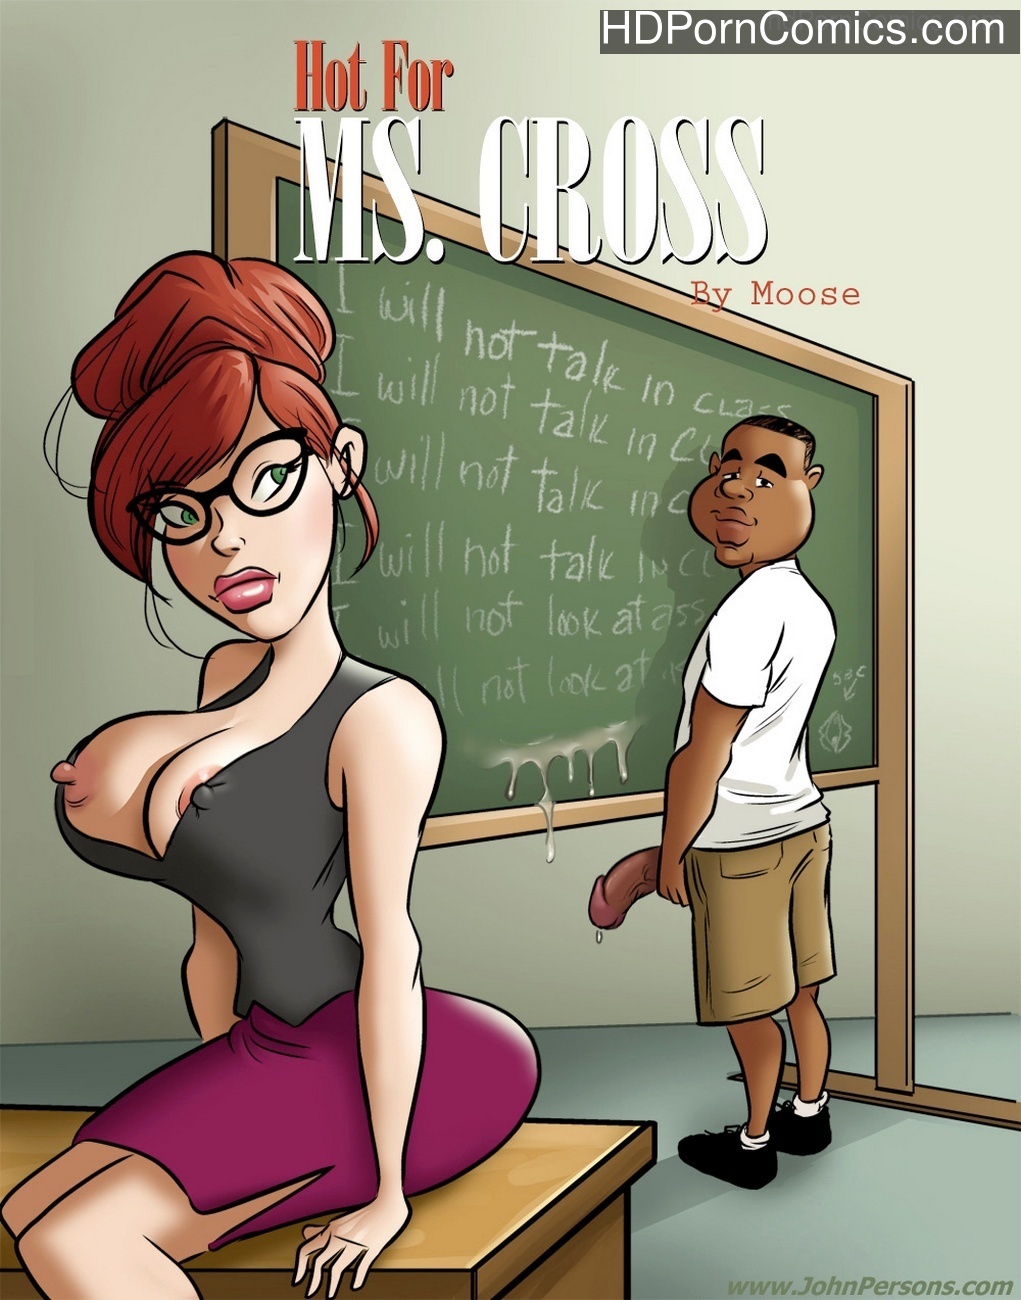 Hot Sex Porn Comic - Hot For Ms Cross 1 Sex Comic - HD Porn Comics